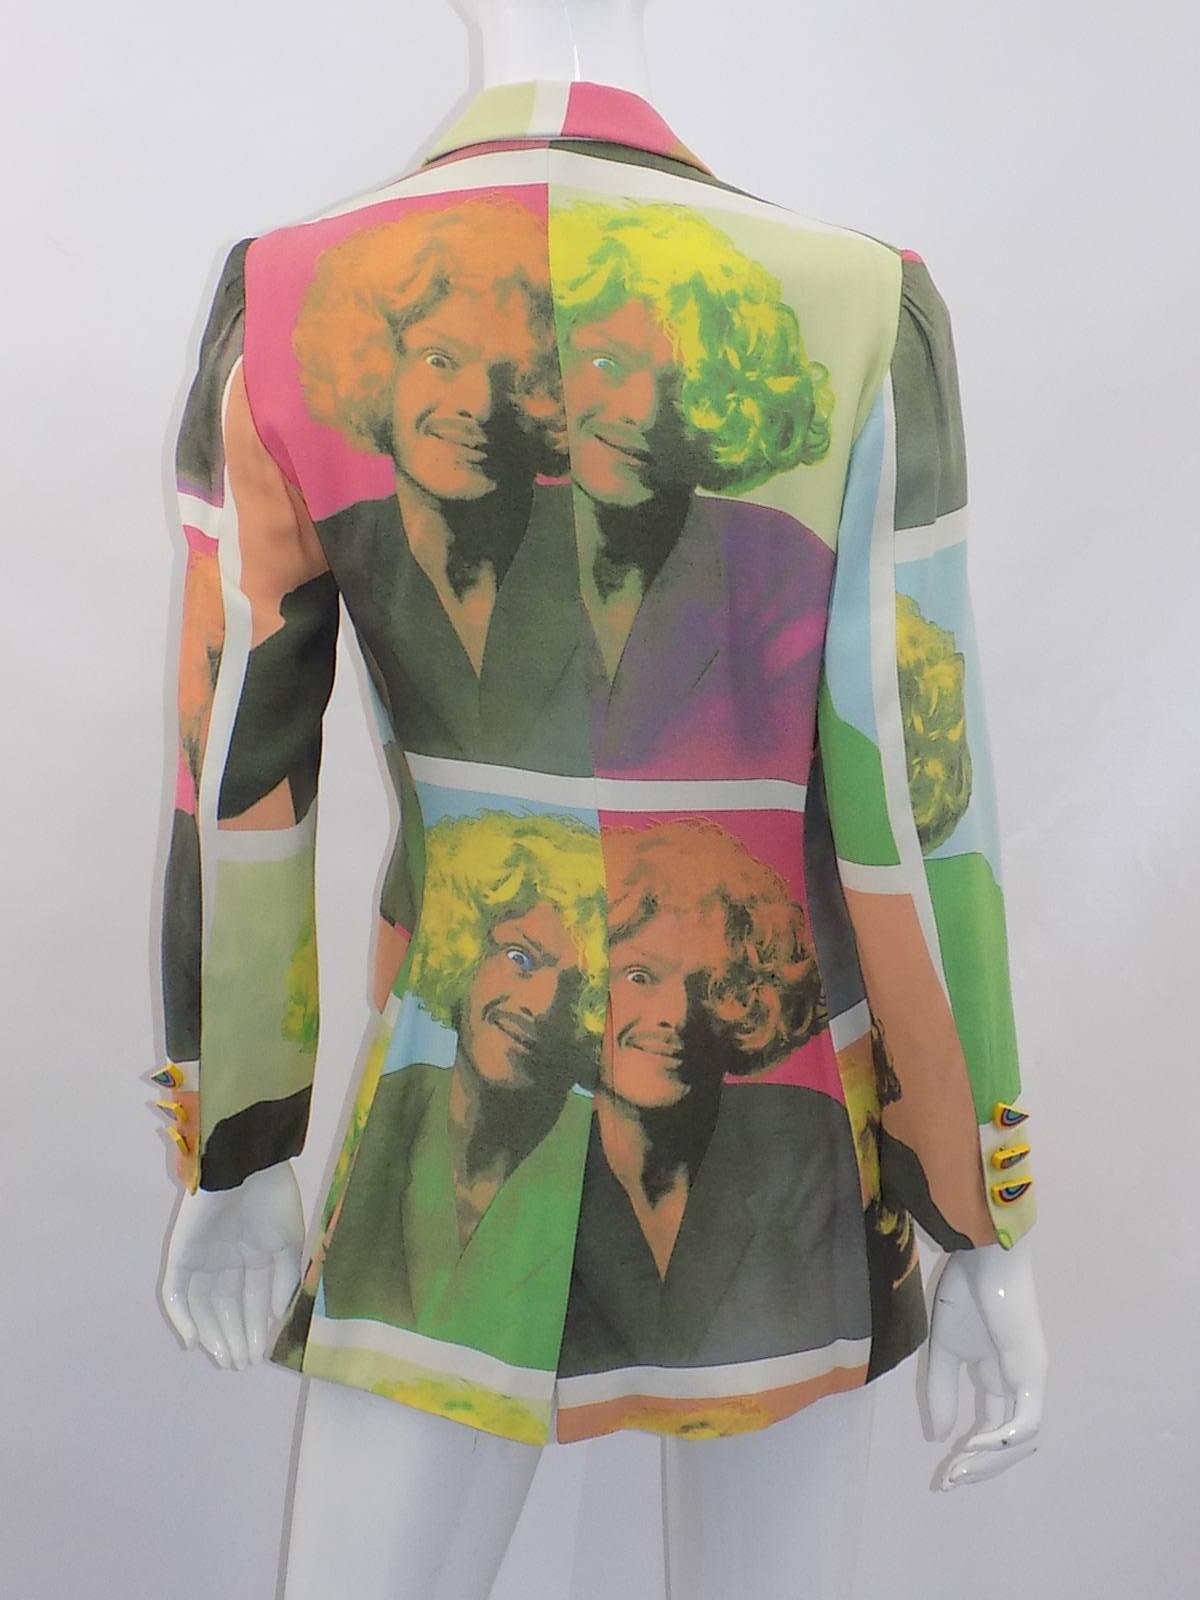 Diese  Billiger und schicker psychedelischer Andy Warhol  Moschinos skurrilen Sinn für Humor in den Vordergrund zu stellen, ist seine Stärke.

Collection'S 1989-1990  mit Andy Warhols 